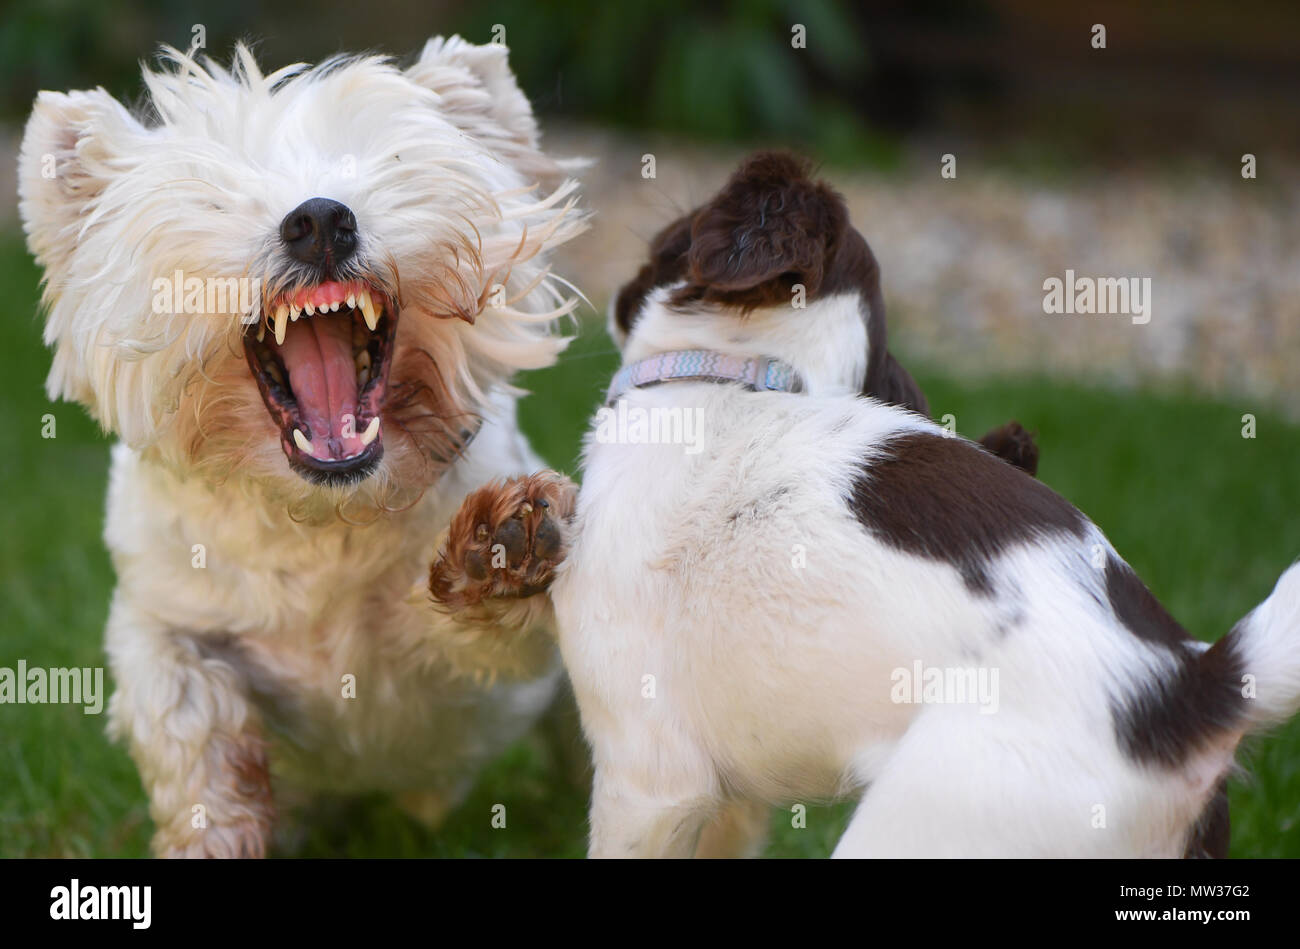 Un West Highland Terrier aunque jugando muestra sus dientes en una pantalla de Im el jefe mientras se participa en actividades sociales con un cachorro Springer Spaniel Inglés. Foto de stock